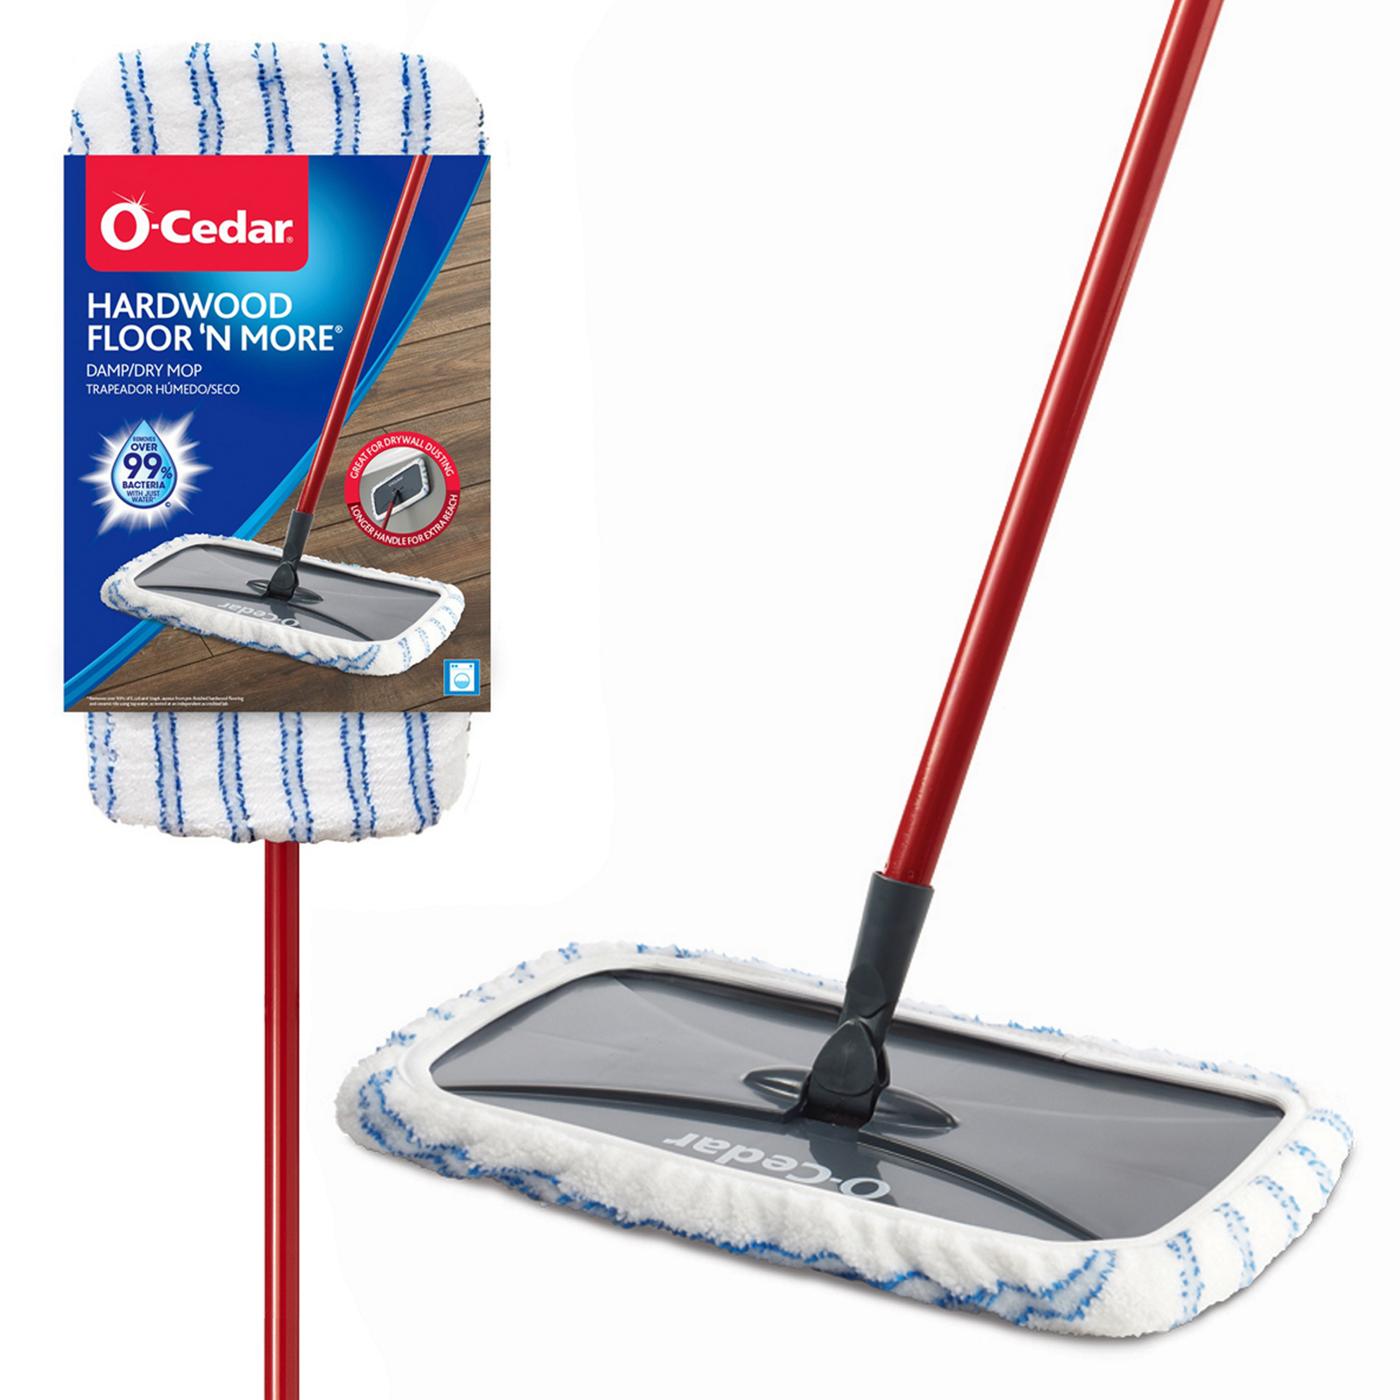 O-Cedar Hardwood Floor 'N More Microfiber Mop - Shop Brooms & Dust